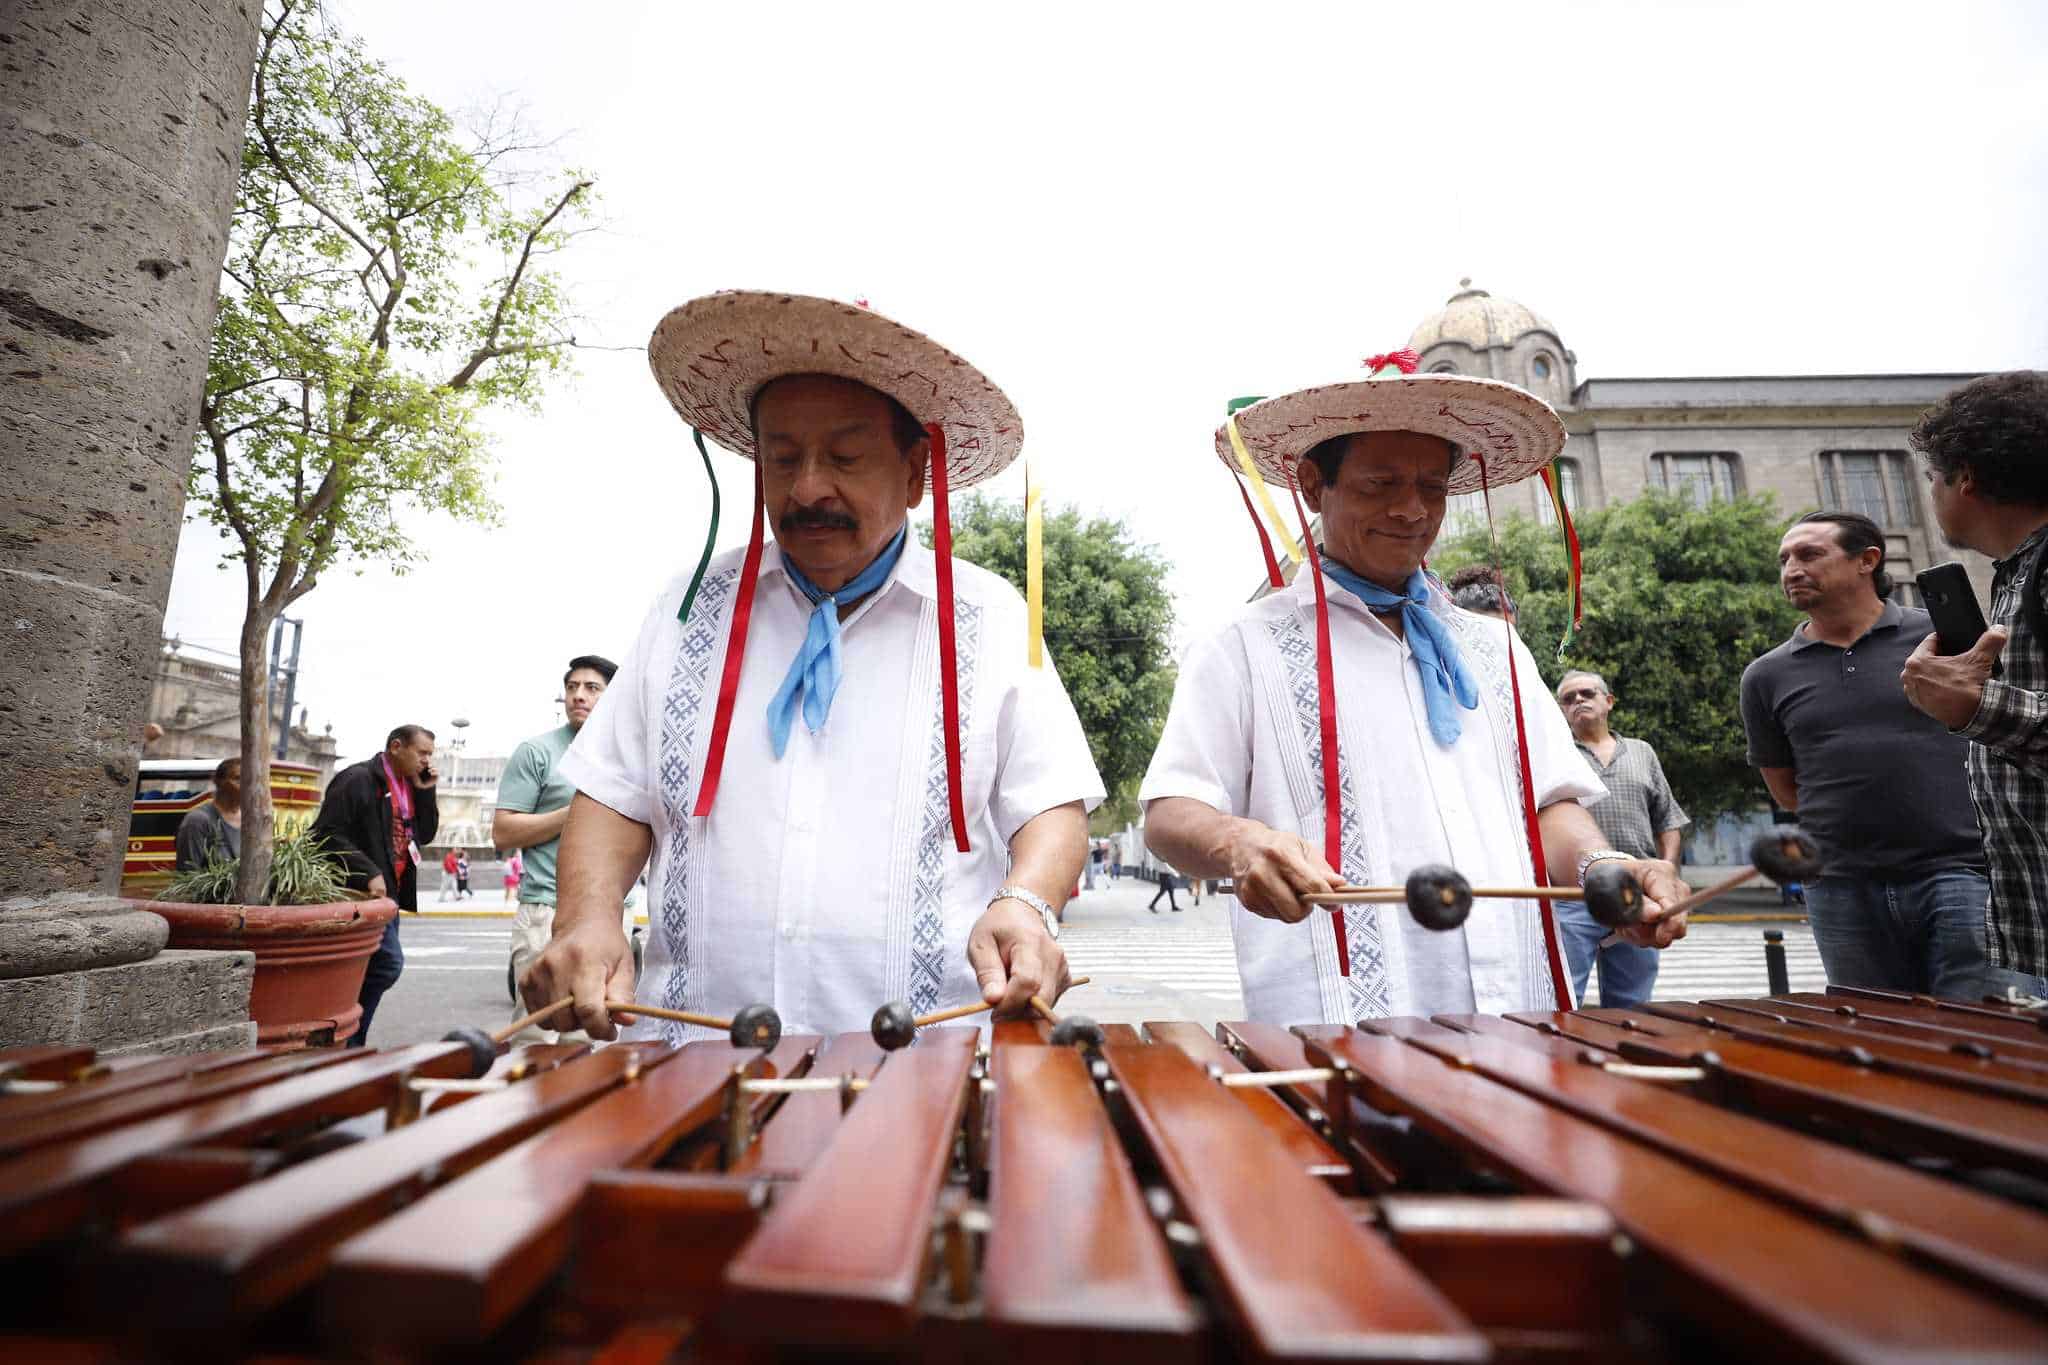 El Festival Intercultural de Pueblos Originarios celebra su edición 23 en Guadalajara